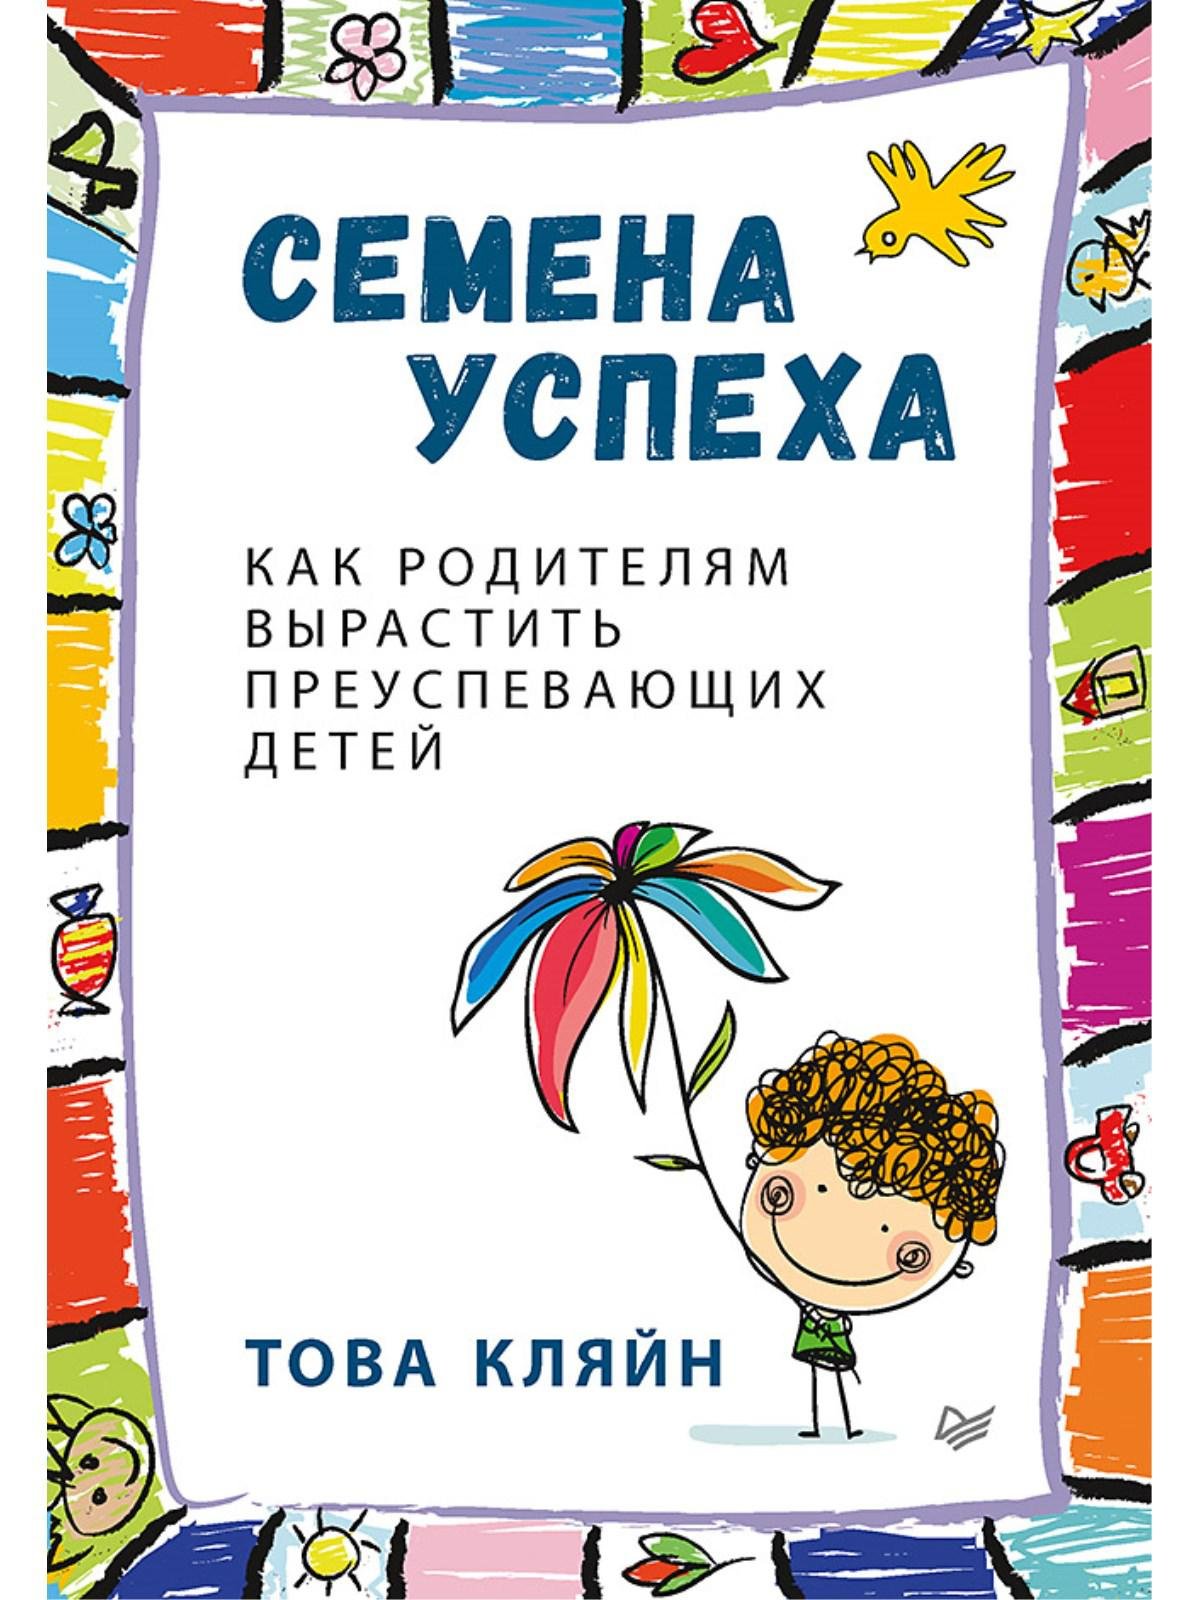 Zakazat.ru: Семена успеха. Как родителям вырастить преуспевающих детей. Кляйн Това